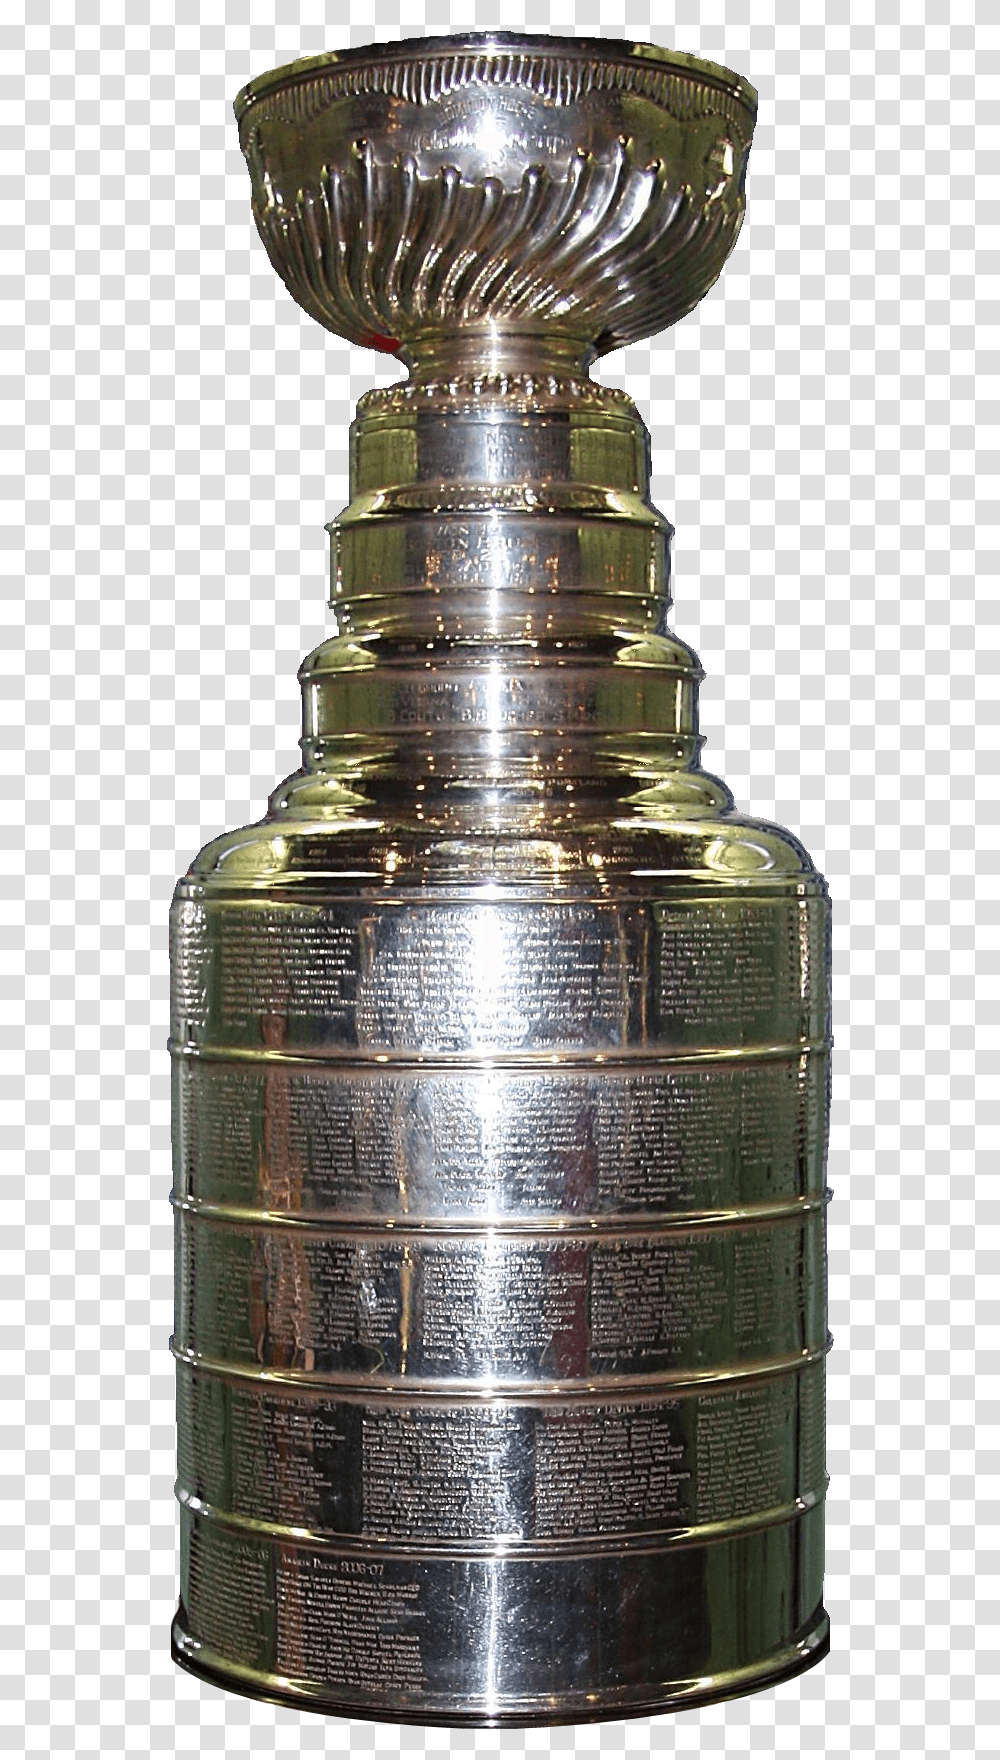 Stanley Cup, Bottle, Shaker, Jar, Ink Bottle Transparent Png